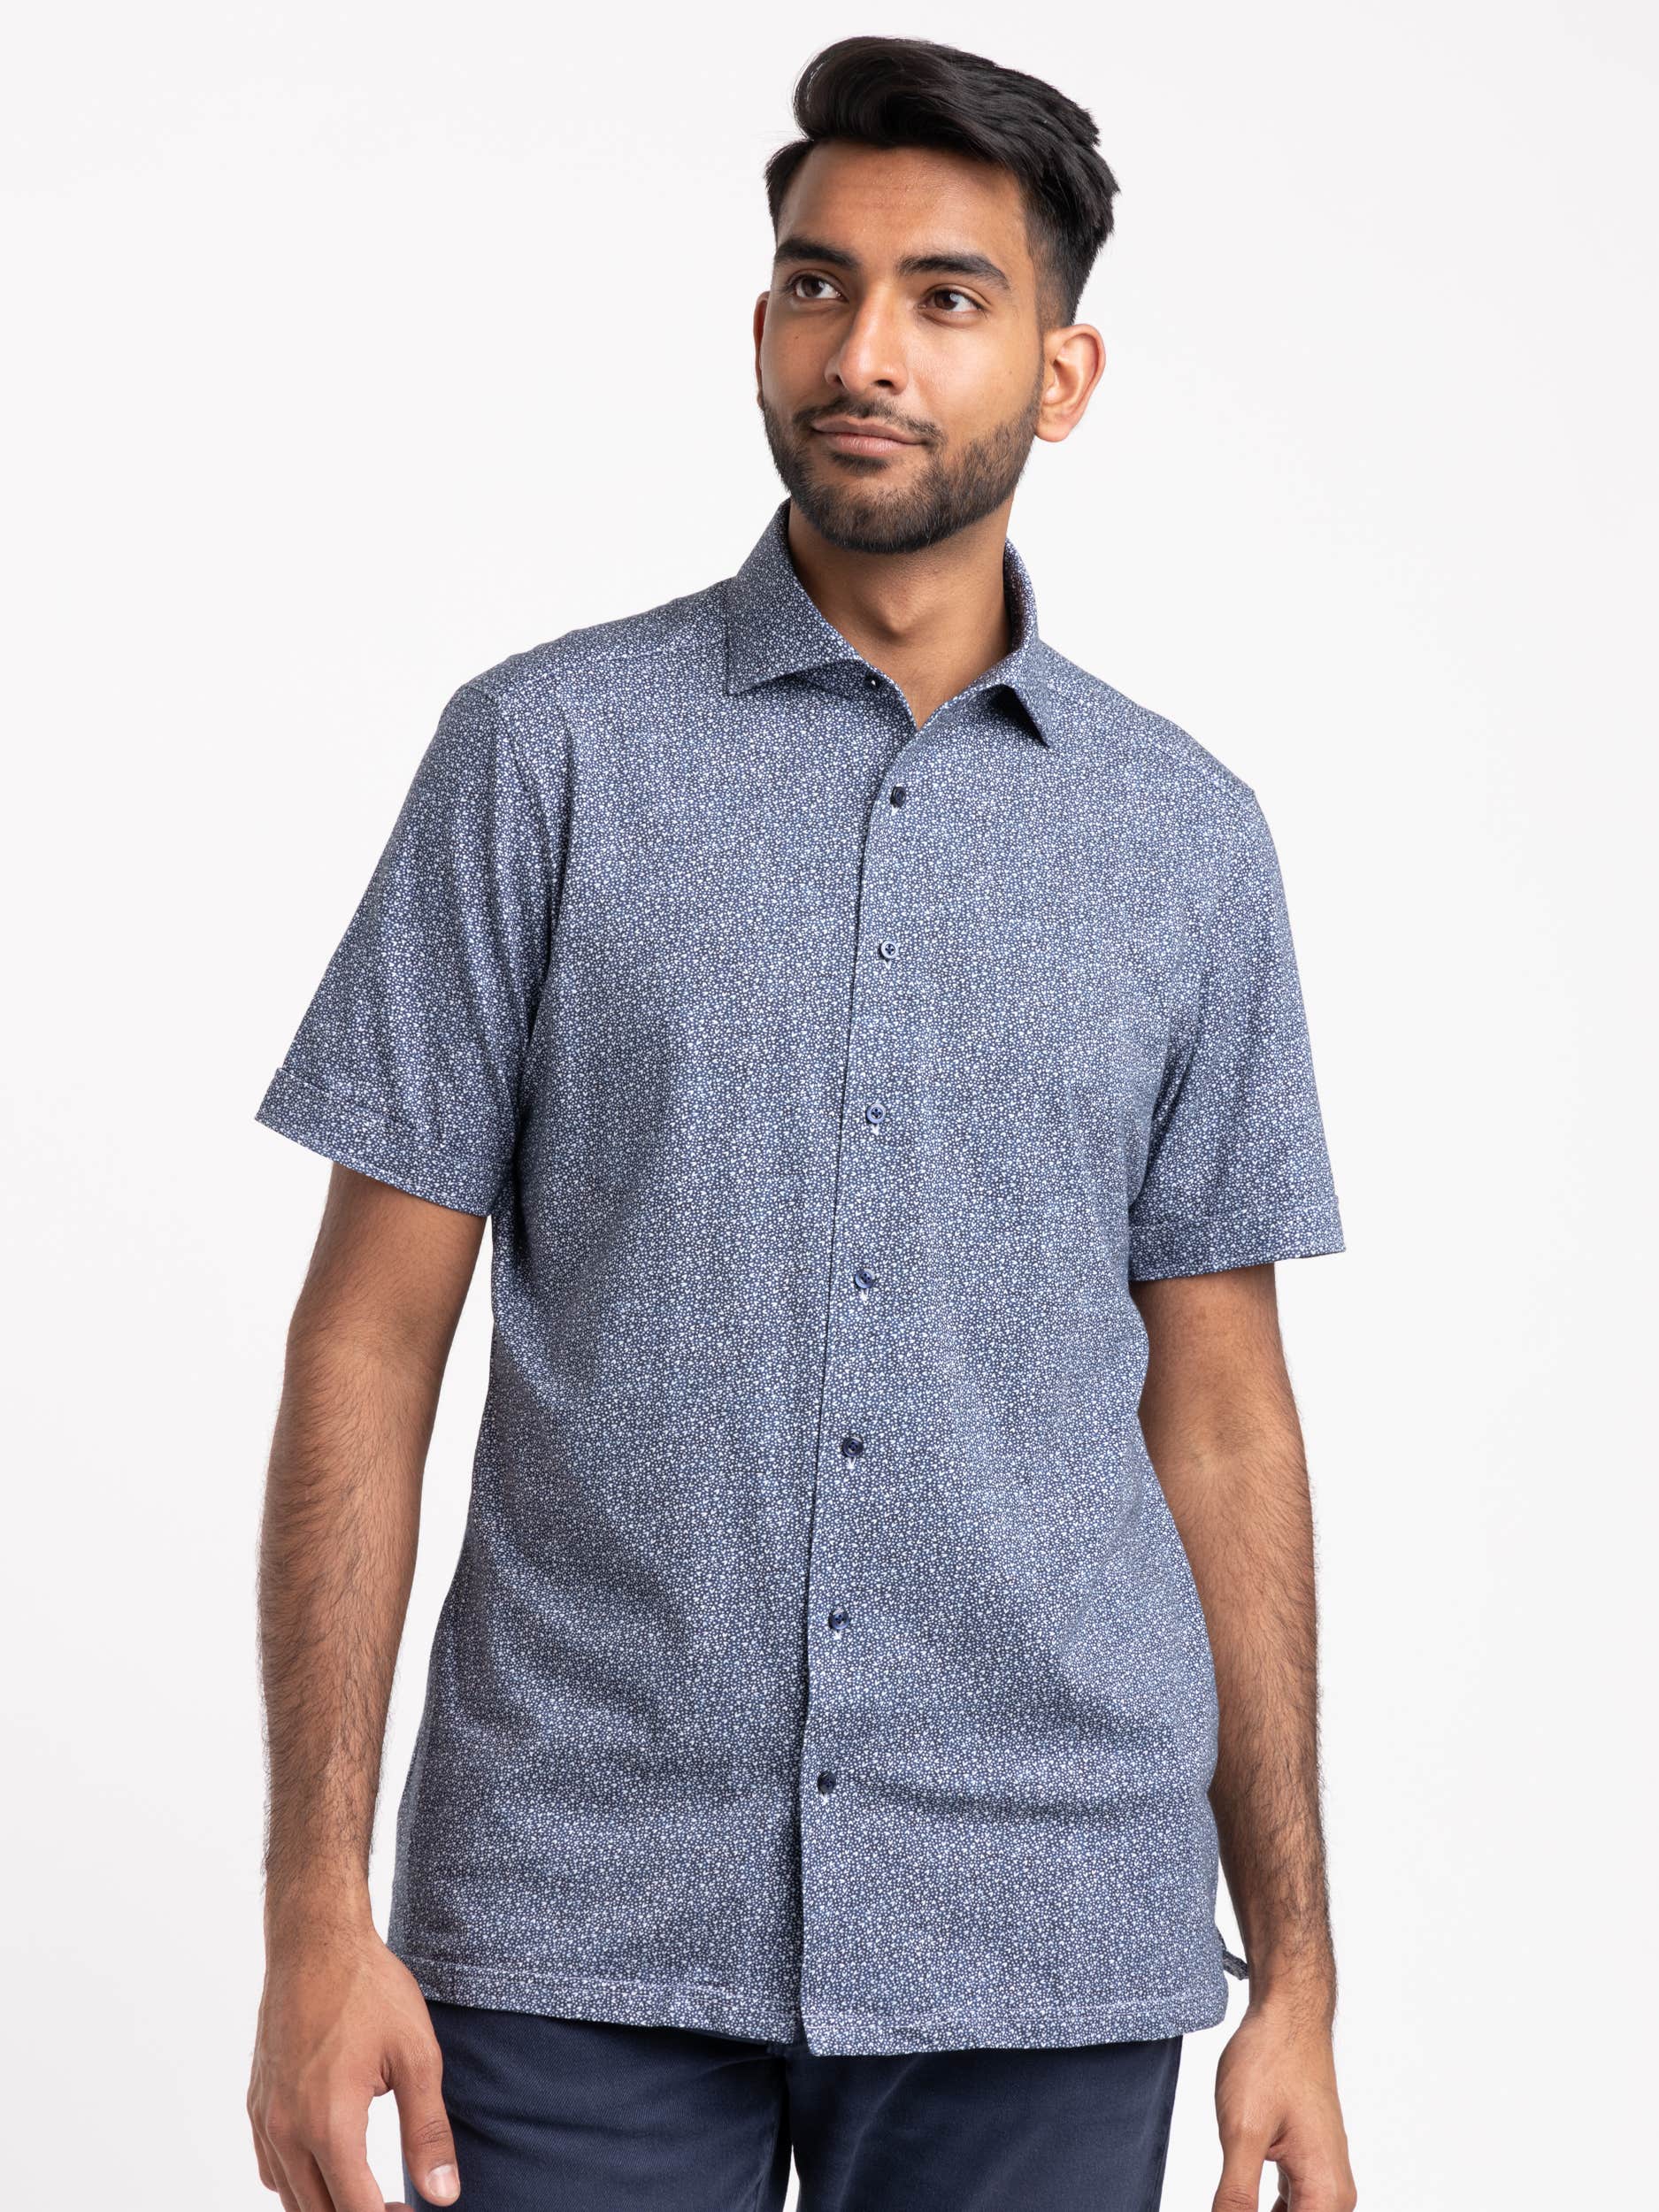 Blue Dotted Short Sleeve Shirt